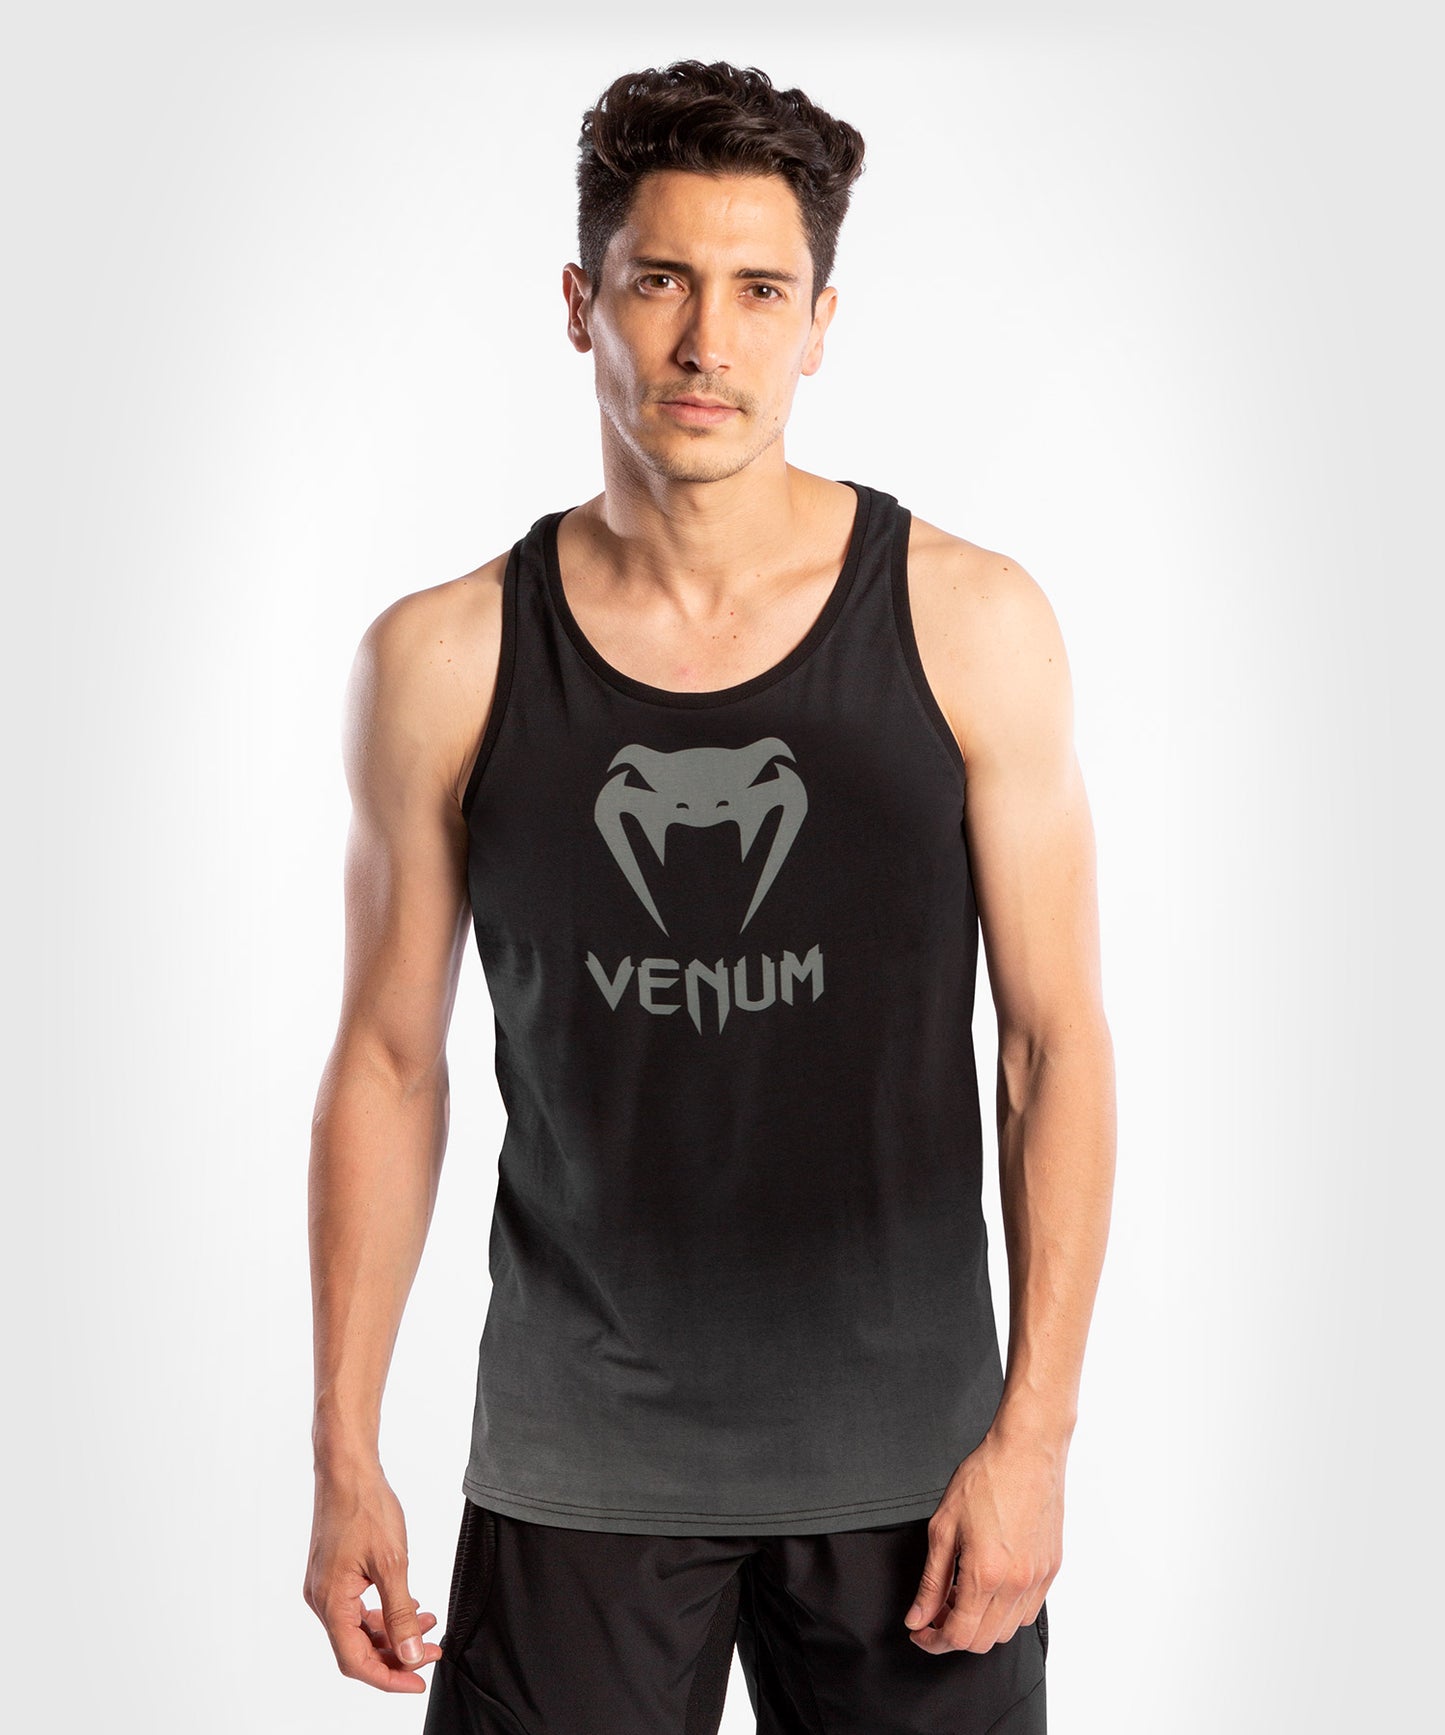 Camiseta sin mangas Venum Classic - Negro/Gris oscuro